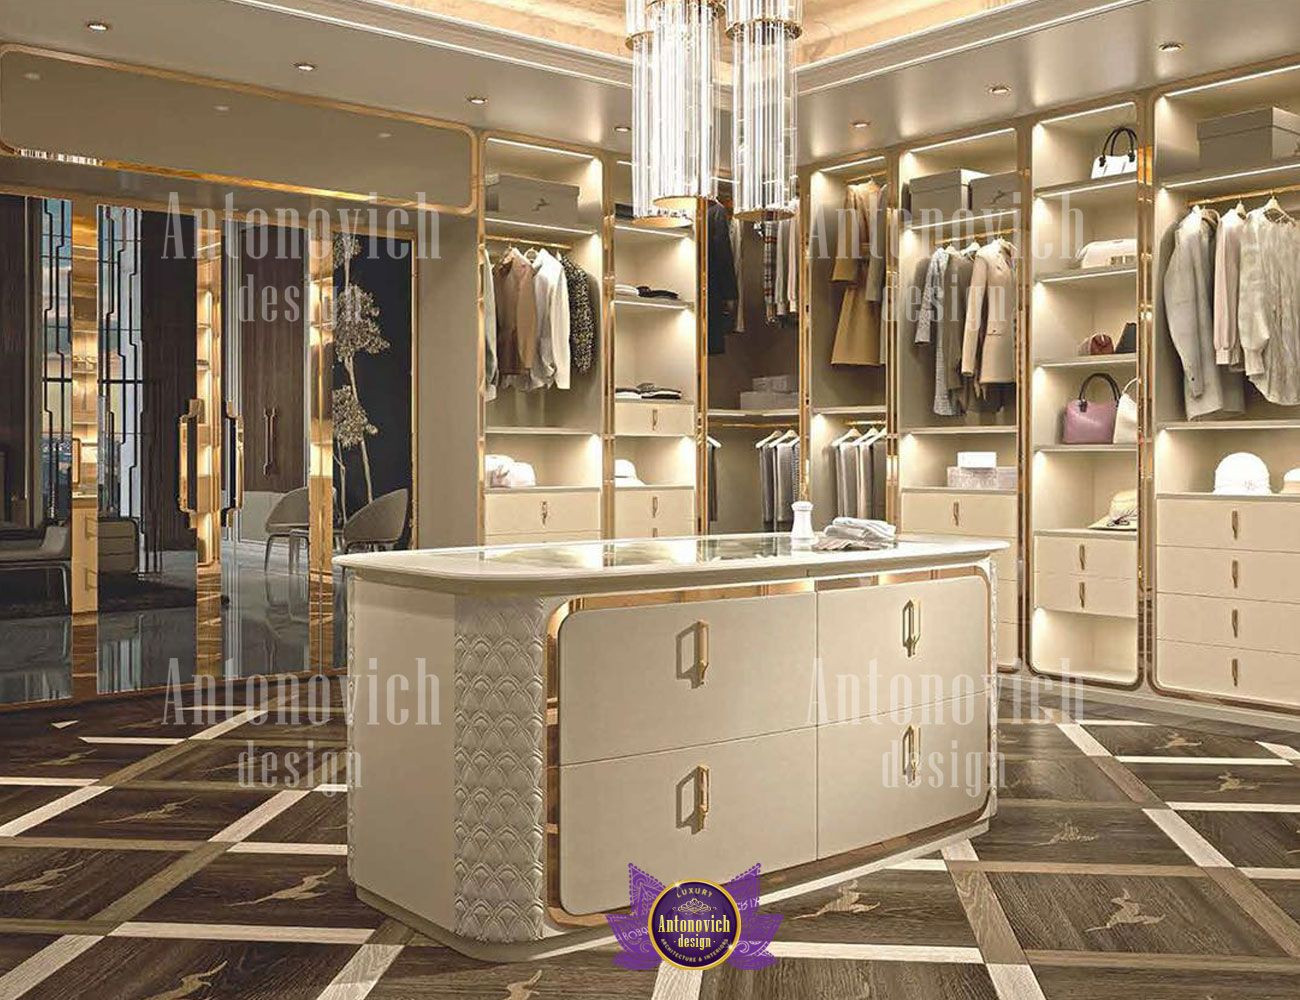 Discover the Ultimate Luxury Wardrobe Interior Design Secrets!